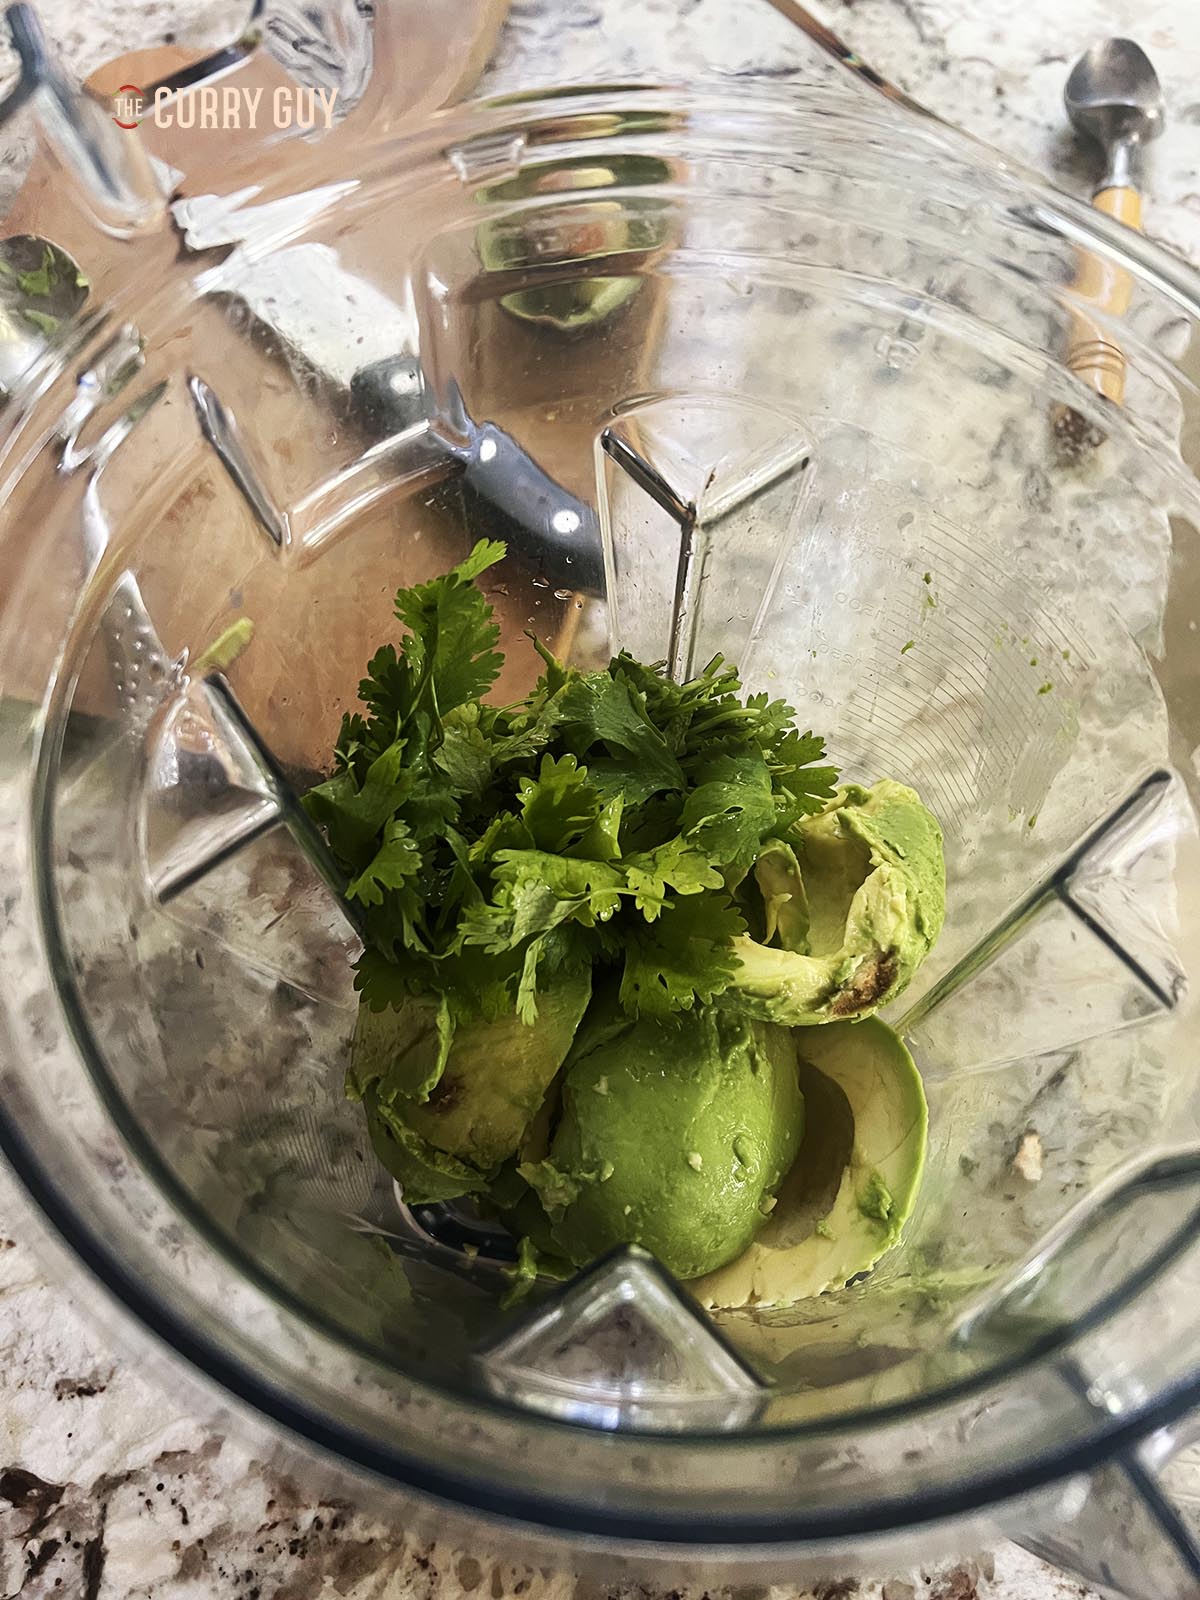 Blending the avocados, cilantro (coriander) and garlic.